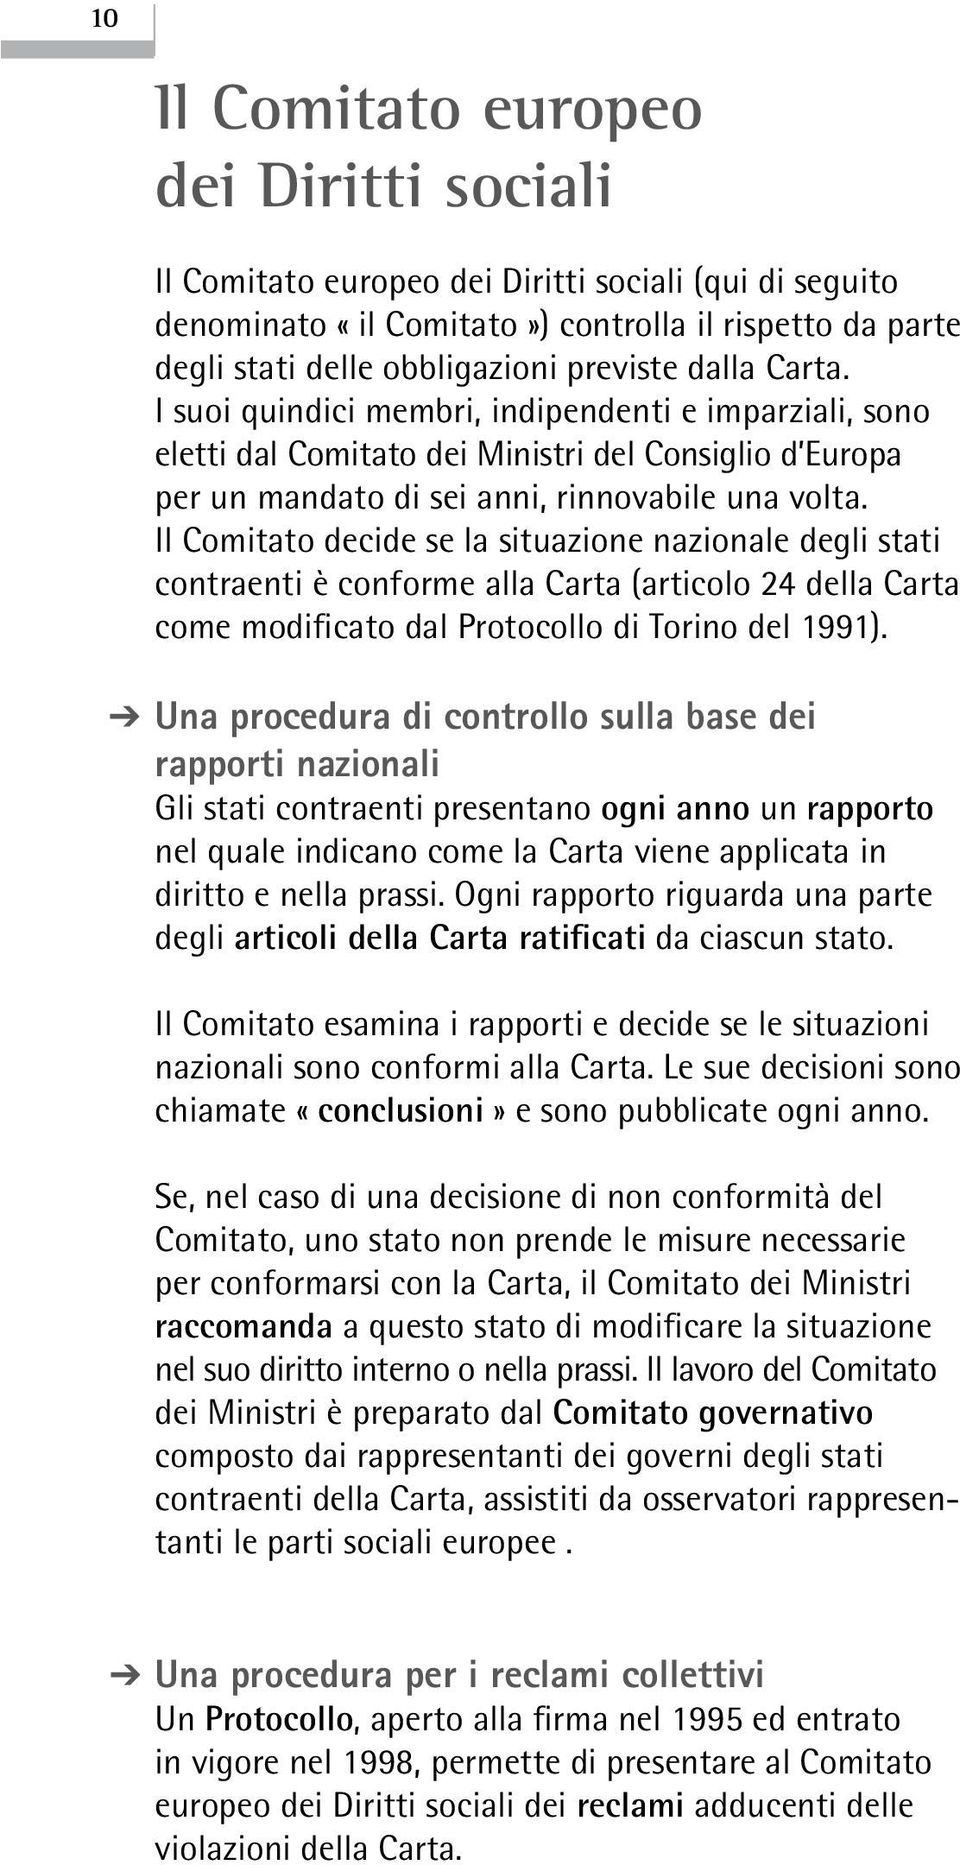 Il Comitato decide se la situazione nazionale degli stati contraenti è conforme alla Carta (articolo 24 della Carta come modificato dal Protocollo di Torino del 1991).